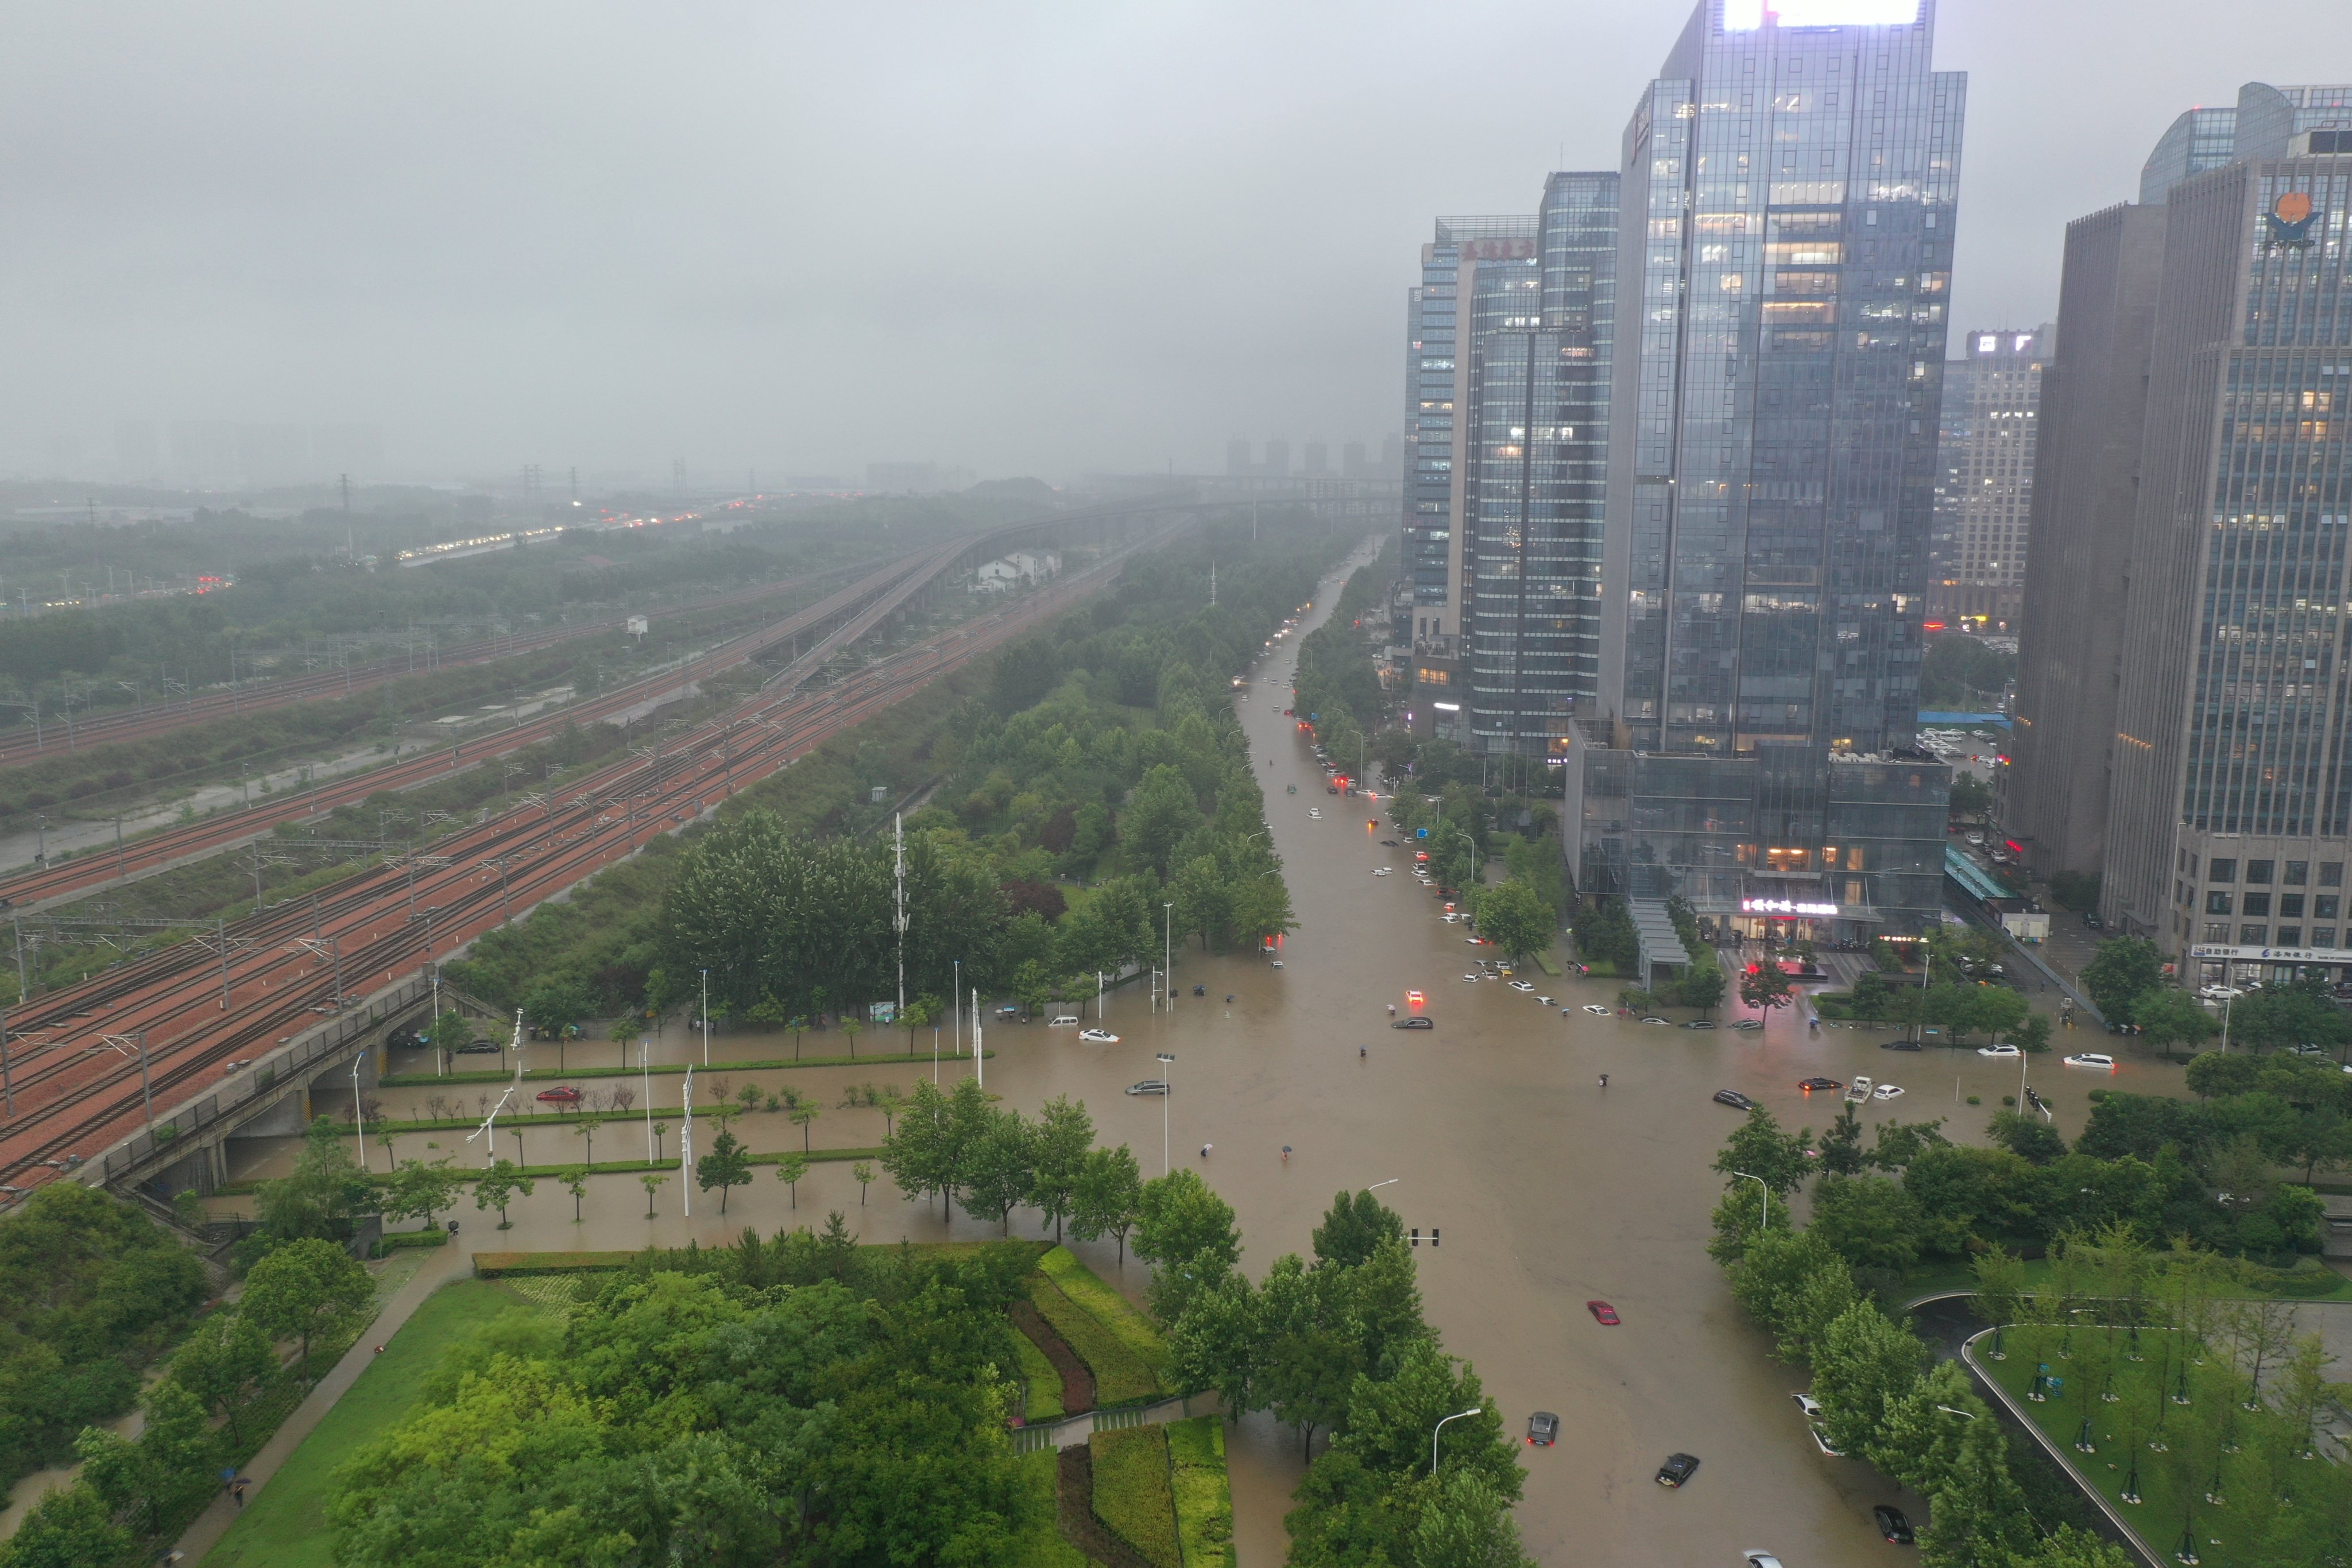 Torrential Rains Hit Henan